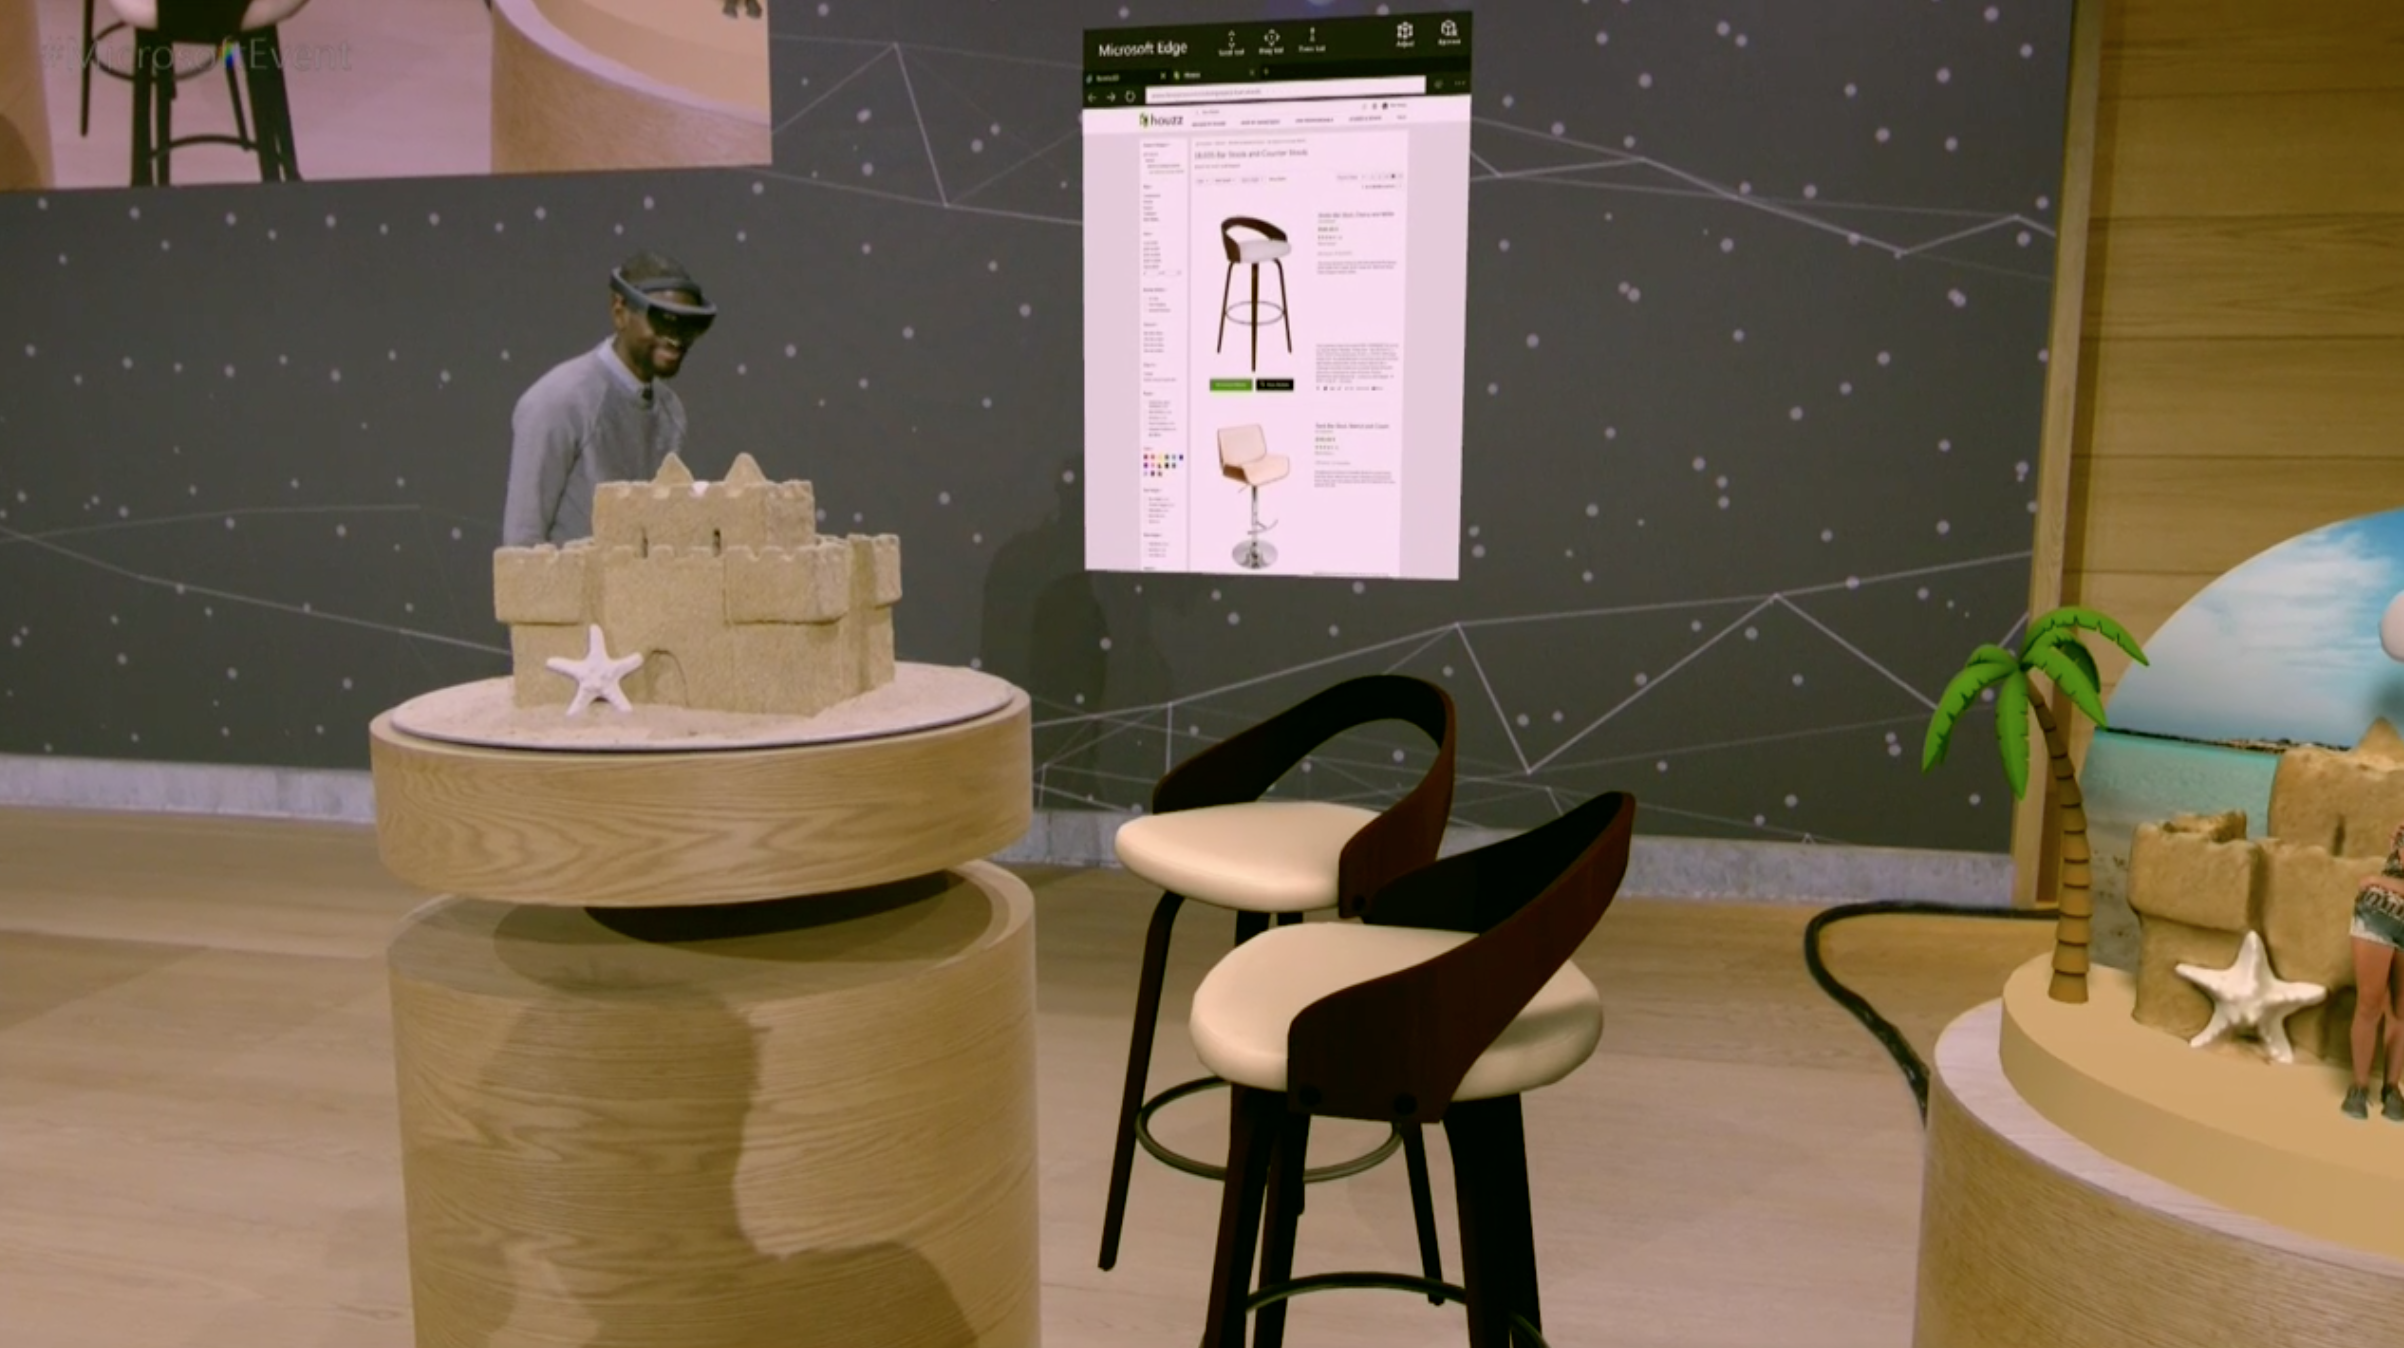 Tuolit ja oikean reunan hiekkalinna ovat virtuaalisia luomuksia todellisessa ympäristössä, kiitos HoloLensin.